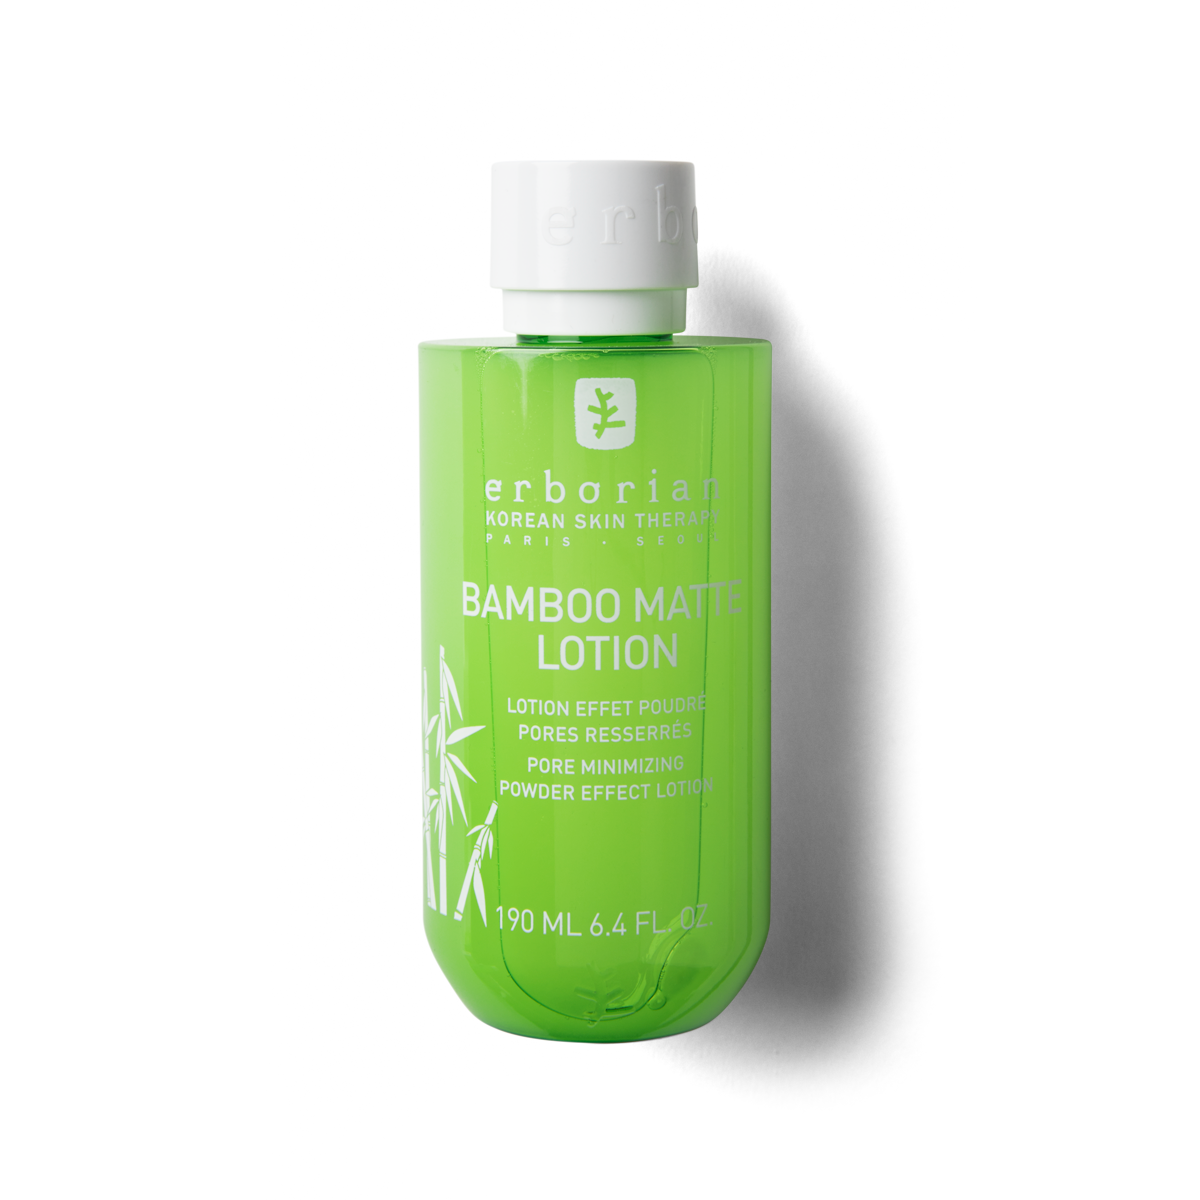 Bamboo mate lotion effet poudré Erborian - flacon de 190 ml